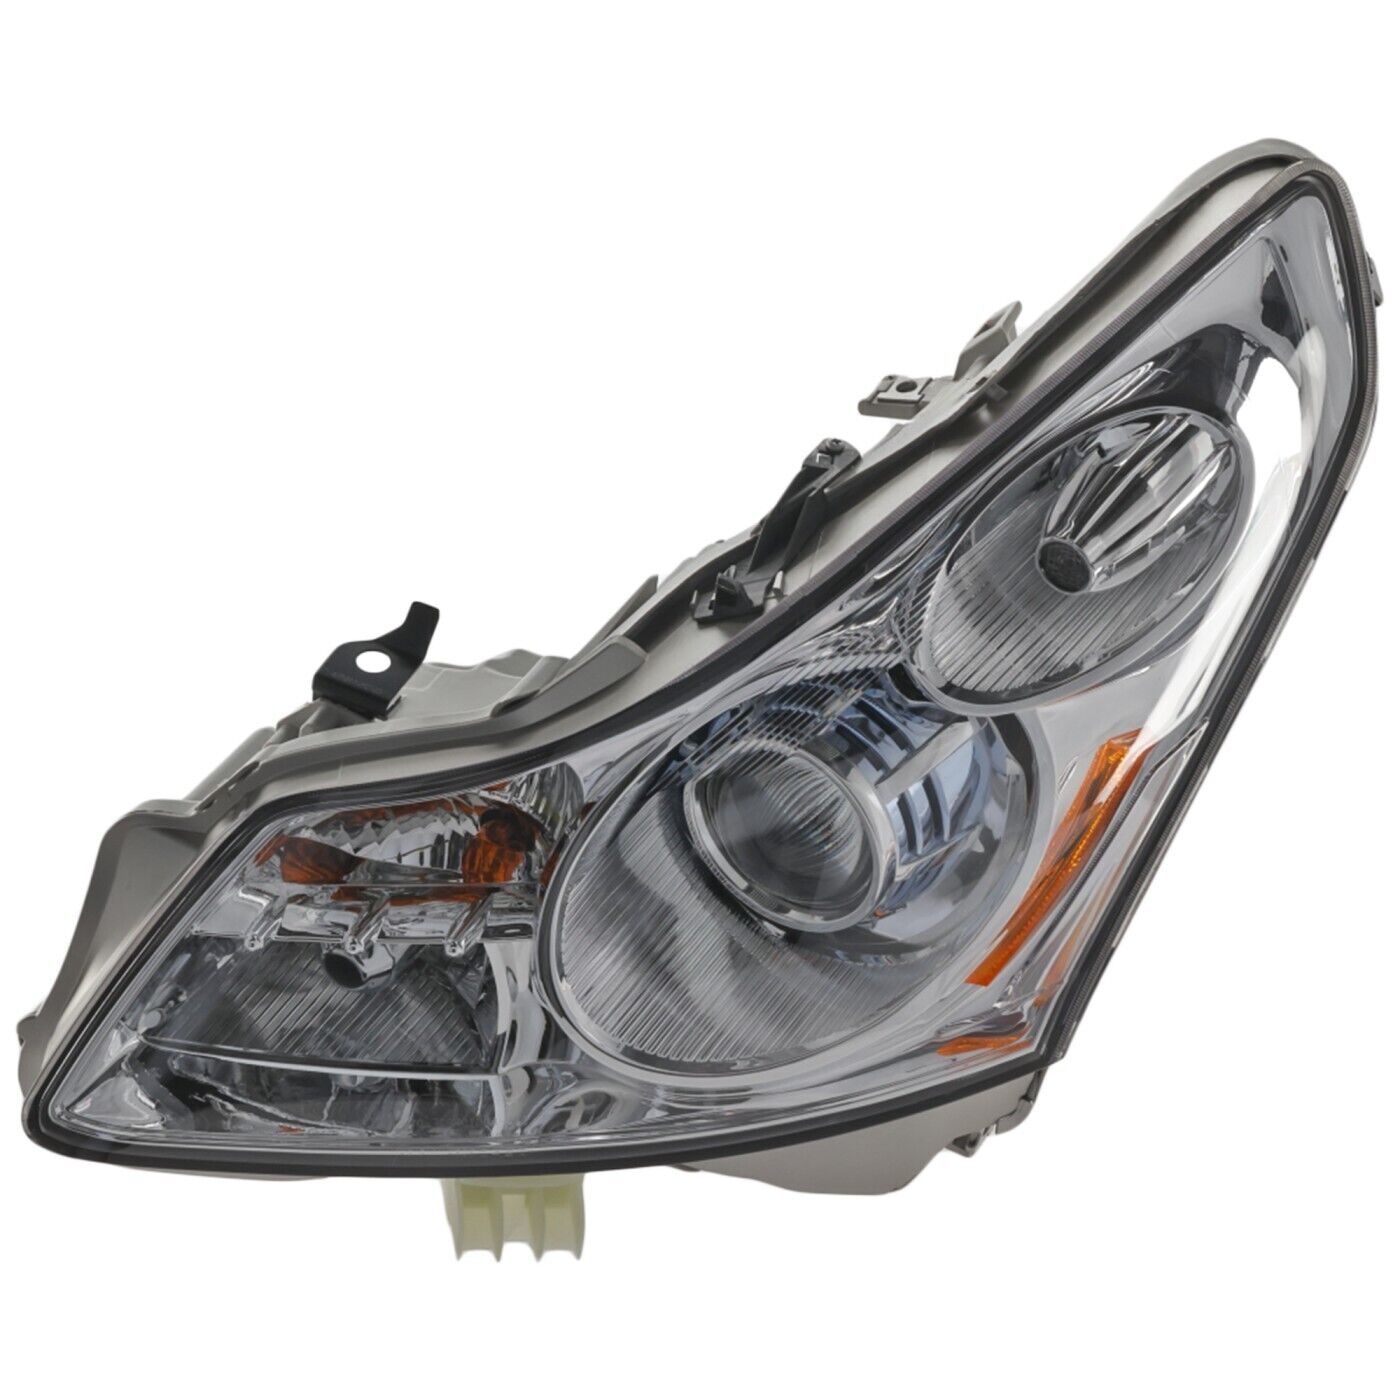 Headlight For 2007-2008 Infiniti G35 Sport X Journey Models Sedan Left With Bulb